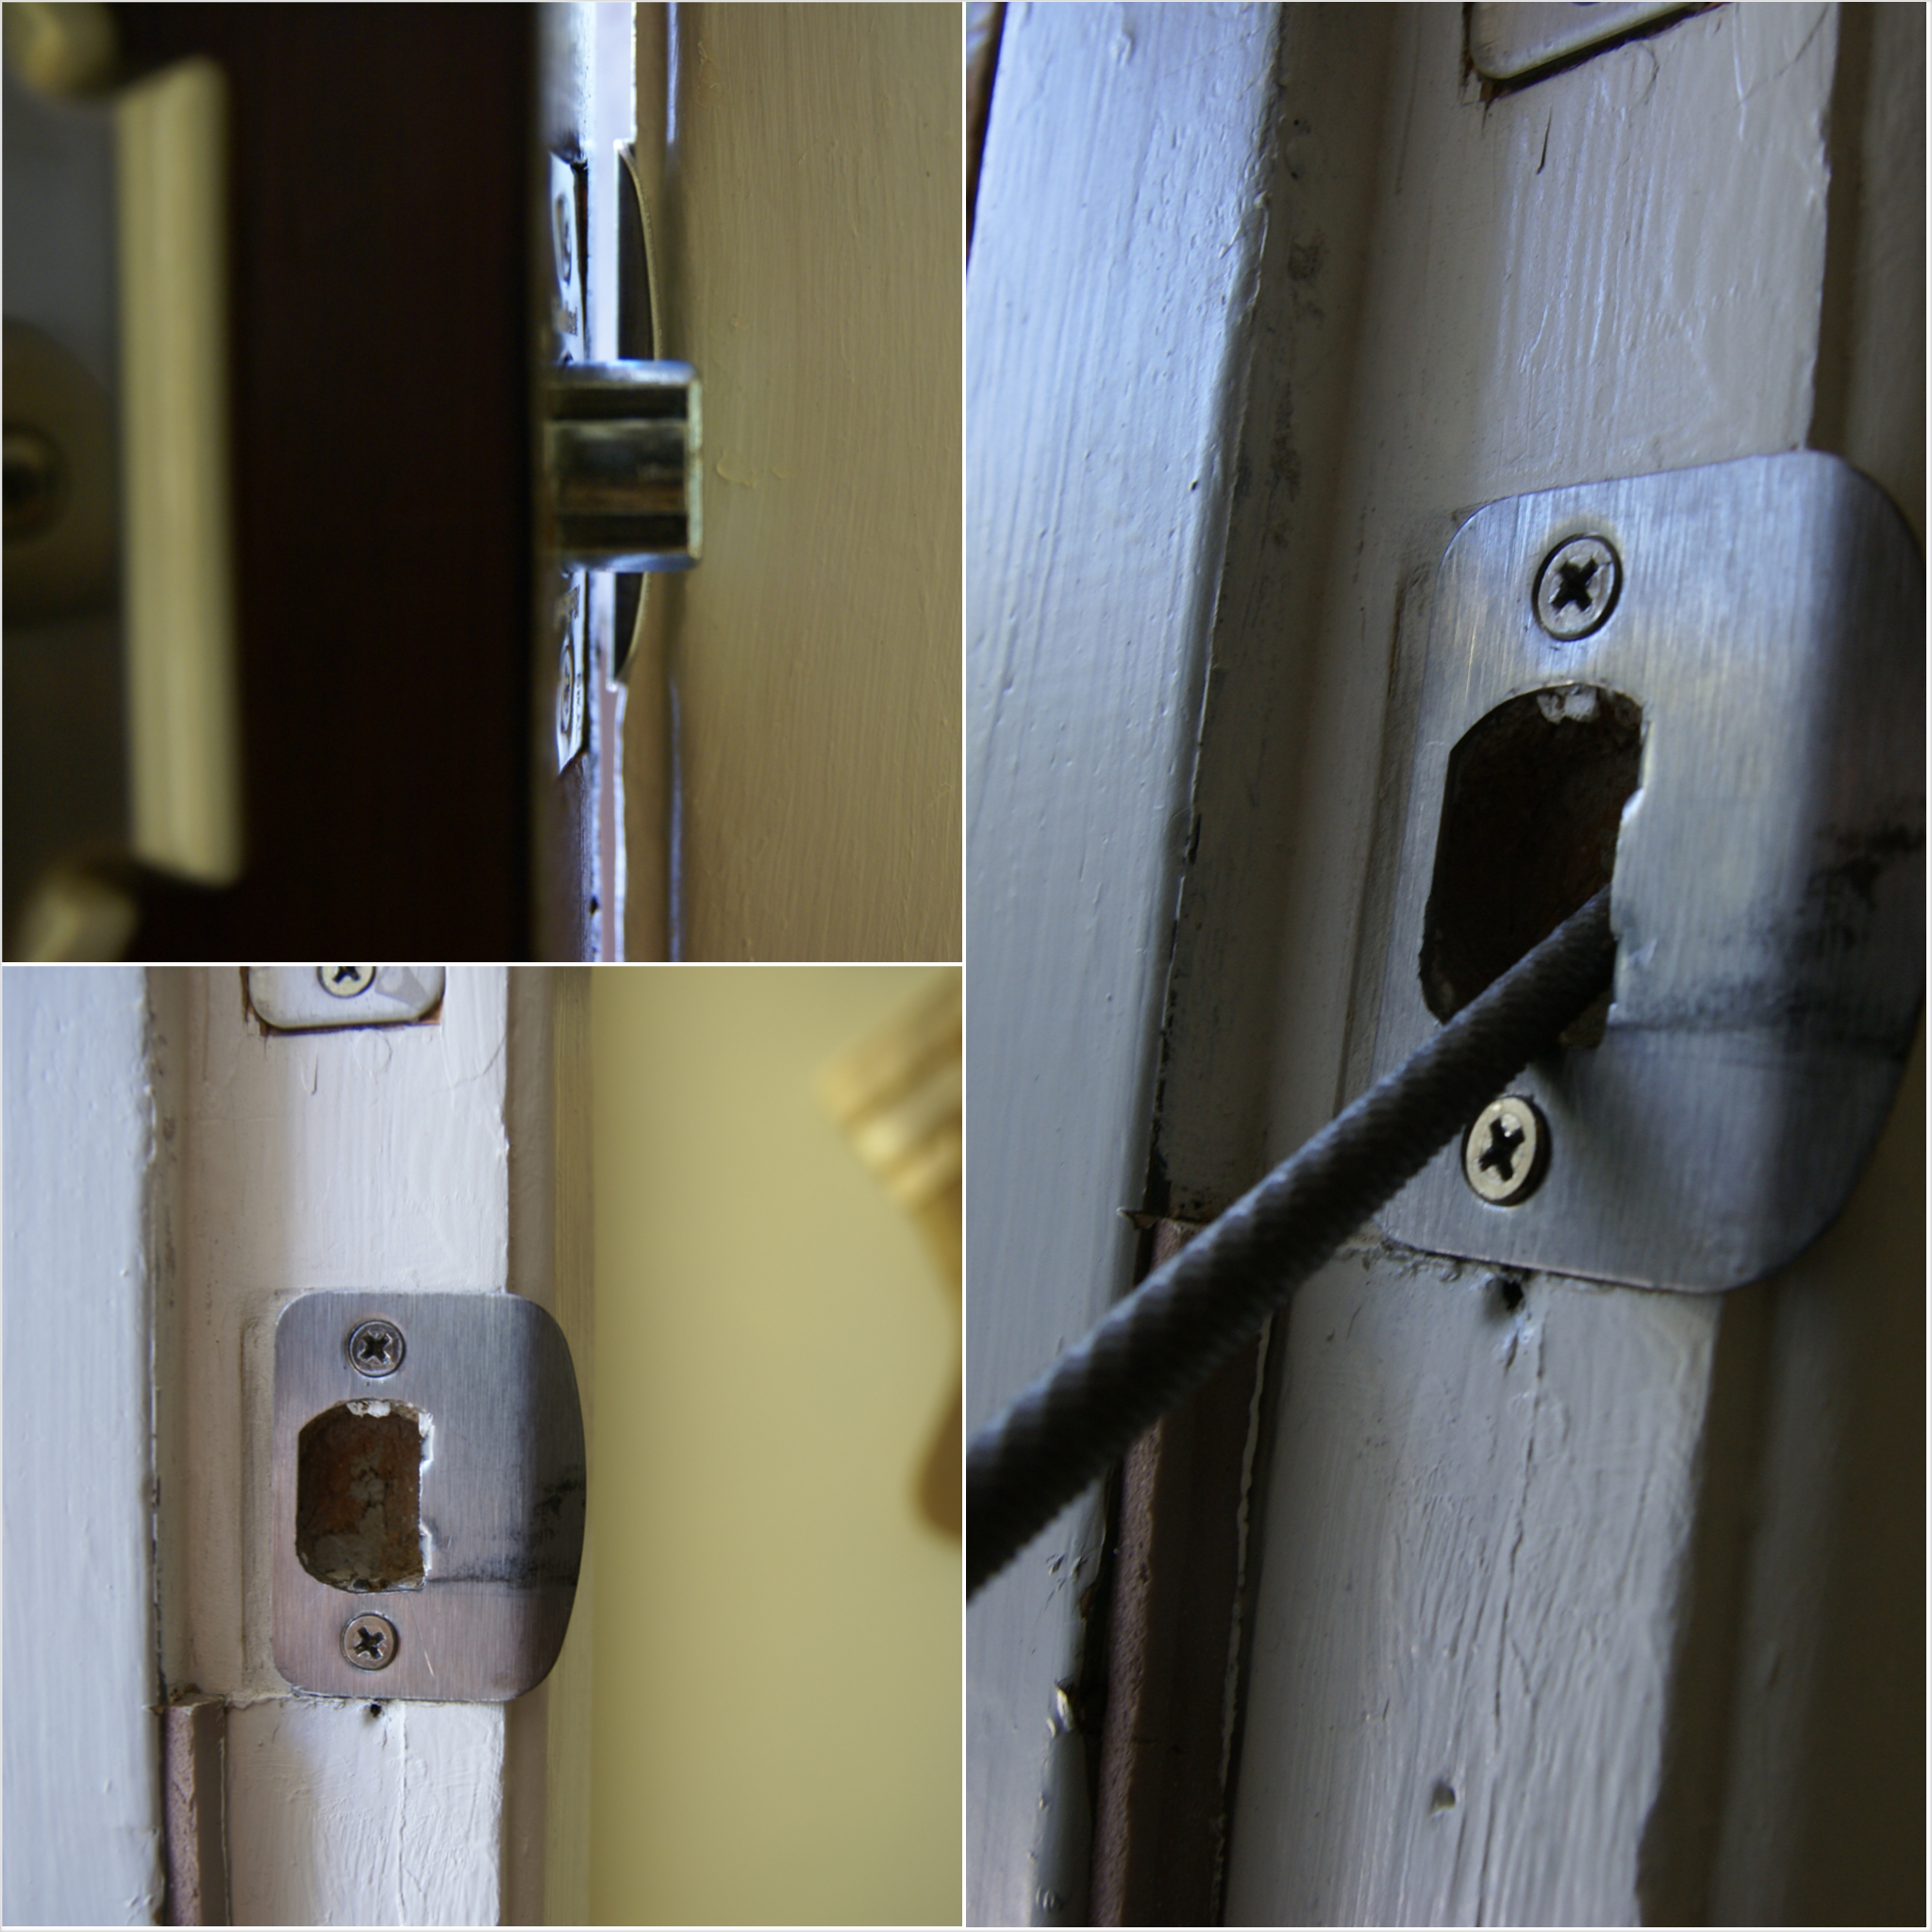 metal plate around door knob